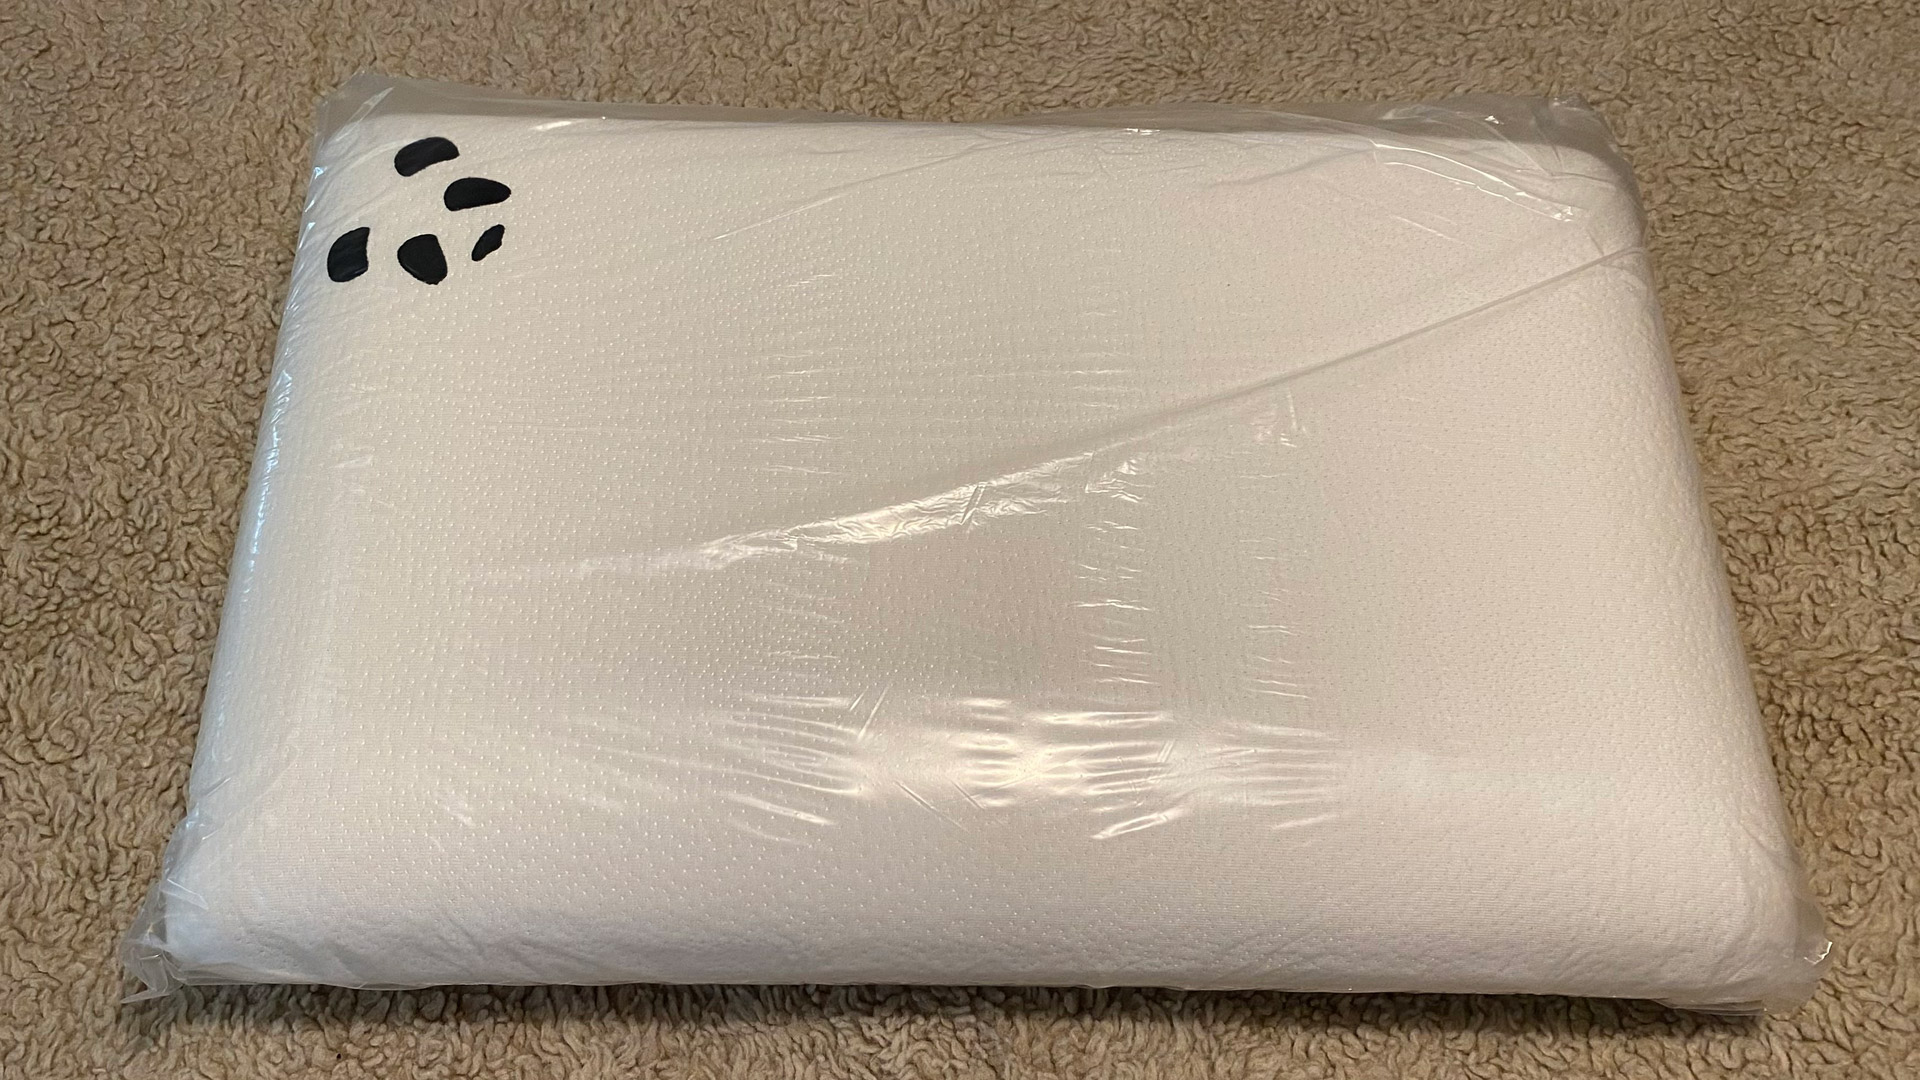 The Panda Memory Foam Bamboo Pillow in plastic wrap